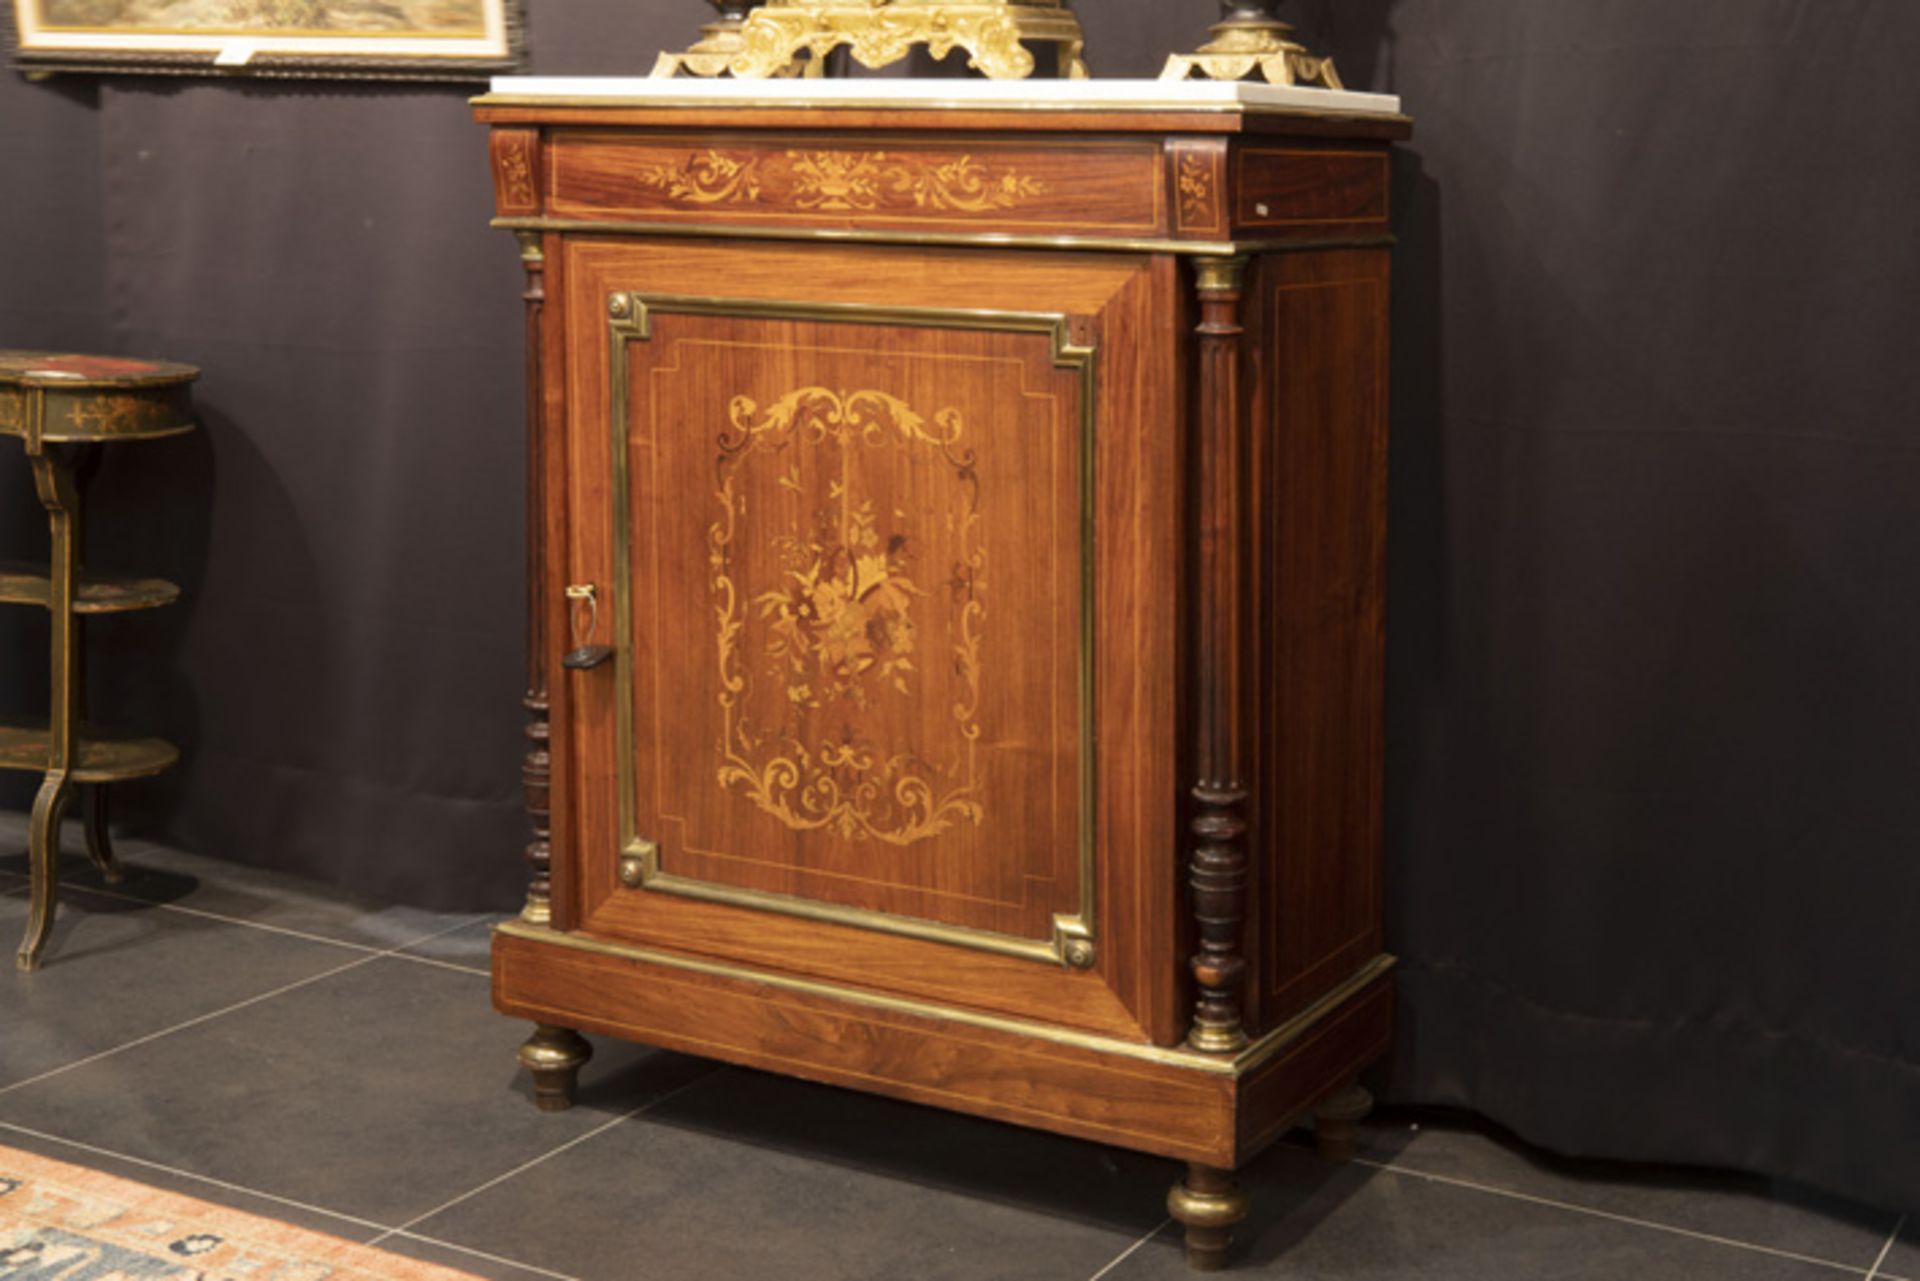 FRANKRIJK - 19° EEUW neoclassicistisch meubel in marqueterie versierd met koper- en bronsbeslag en - Bild 2 aus 3